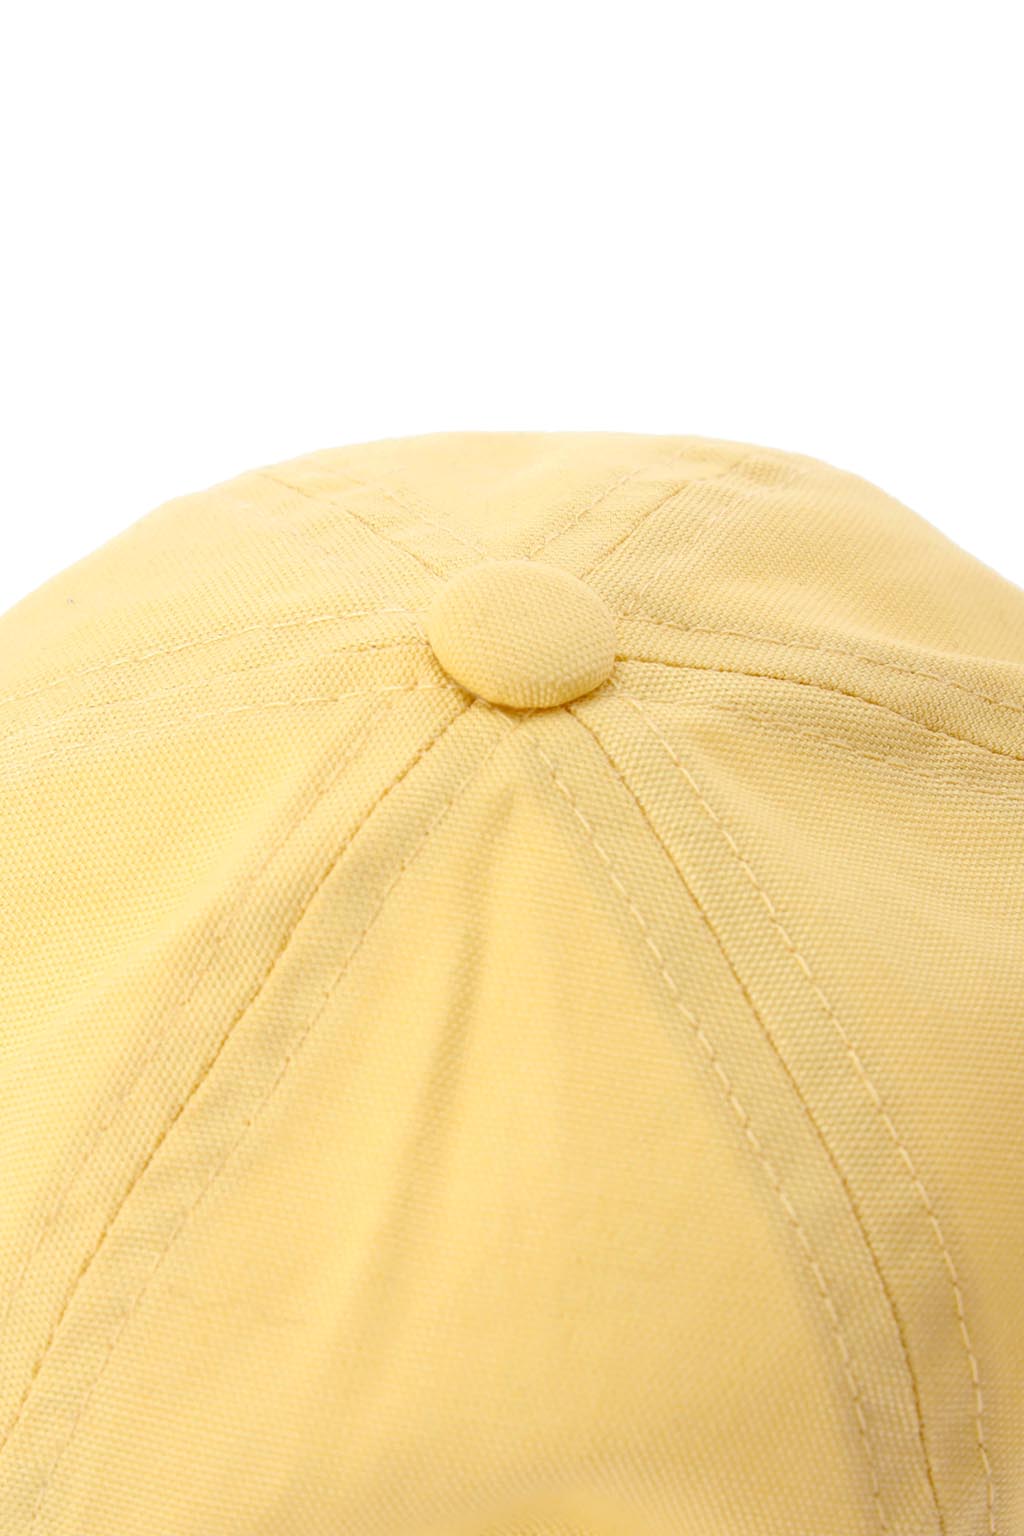 baby-alexia-embroidery-center-logo-cap-yellow-09